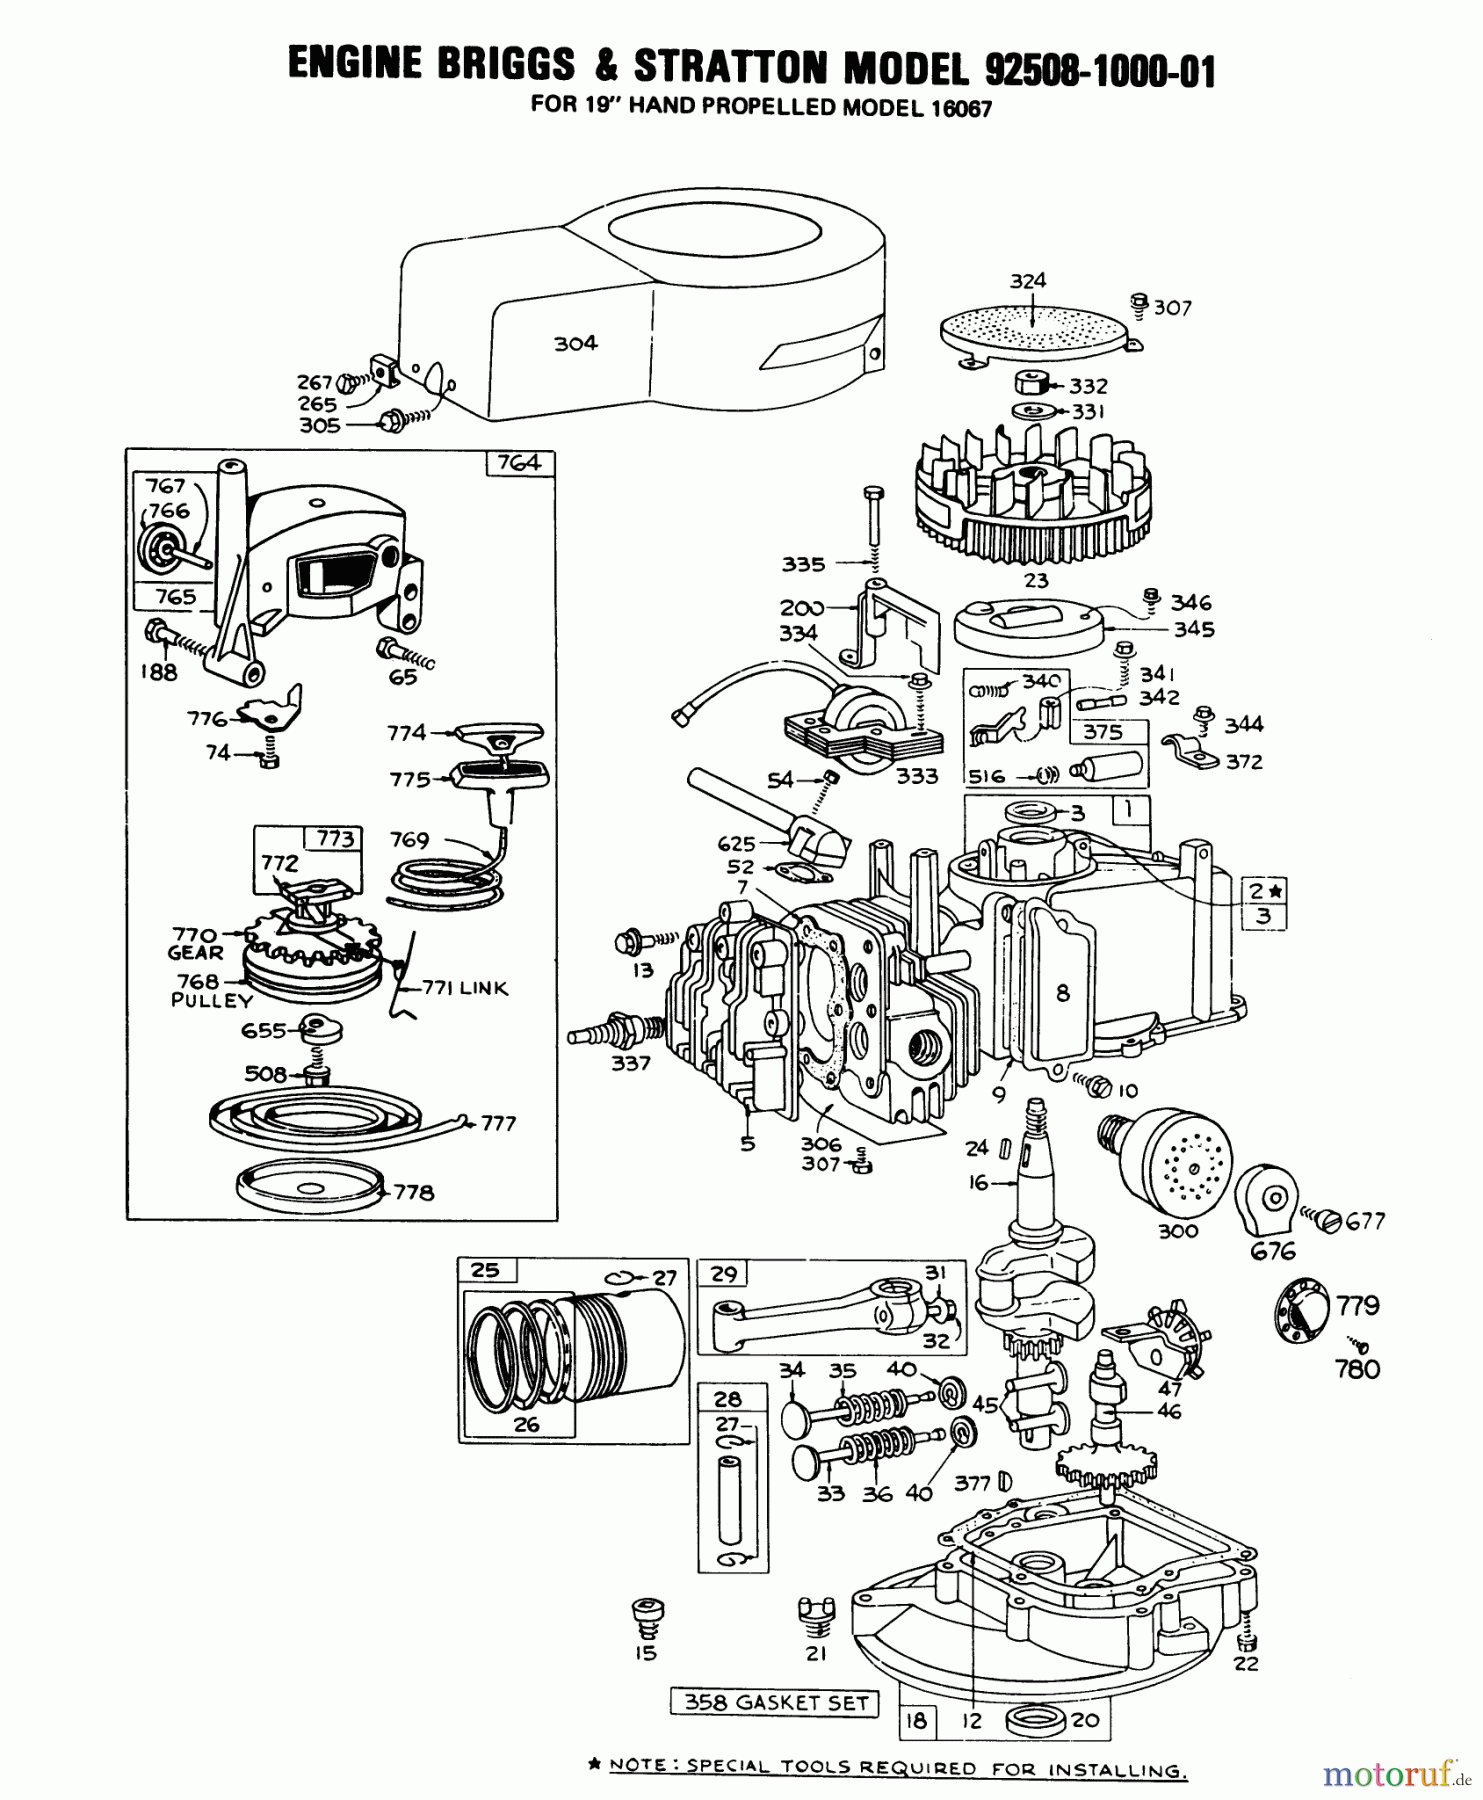  Toro Neu Mowers, Walk-Behind Seite 1 16155 - Toro Whirlwind II Lawnmower, 1978 (8000001-8999999) ENGINE BRIGGS & STRATTON MODEL 92508-1000-01 FOR 19